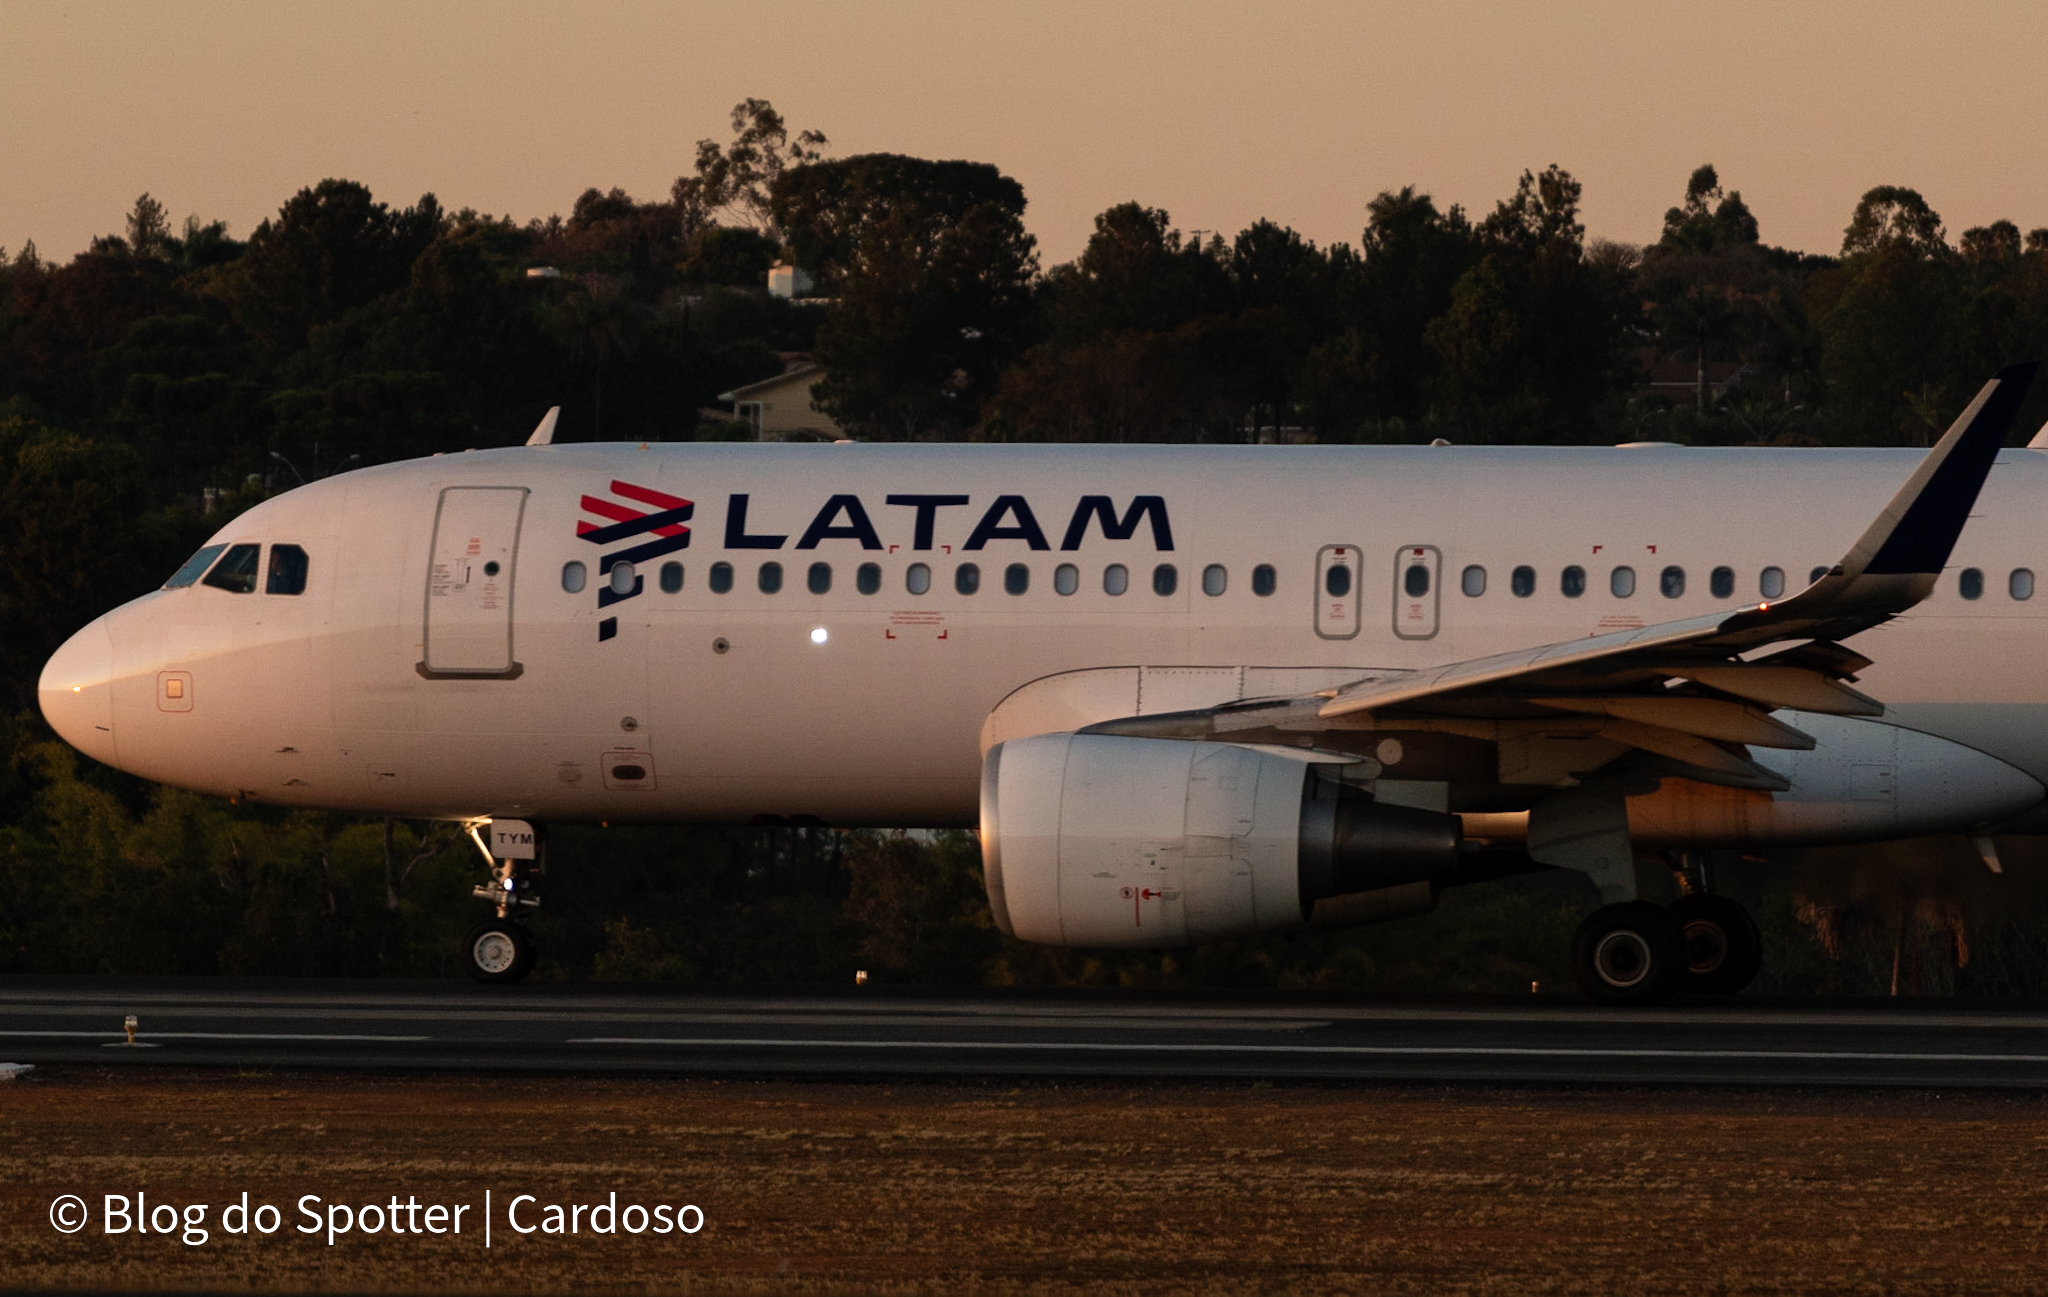 PR-TYM - Airbus A320-214 - LATAM Airlines